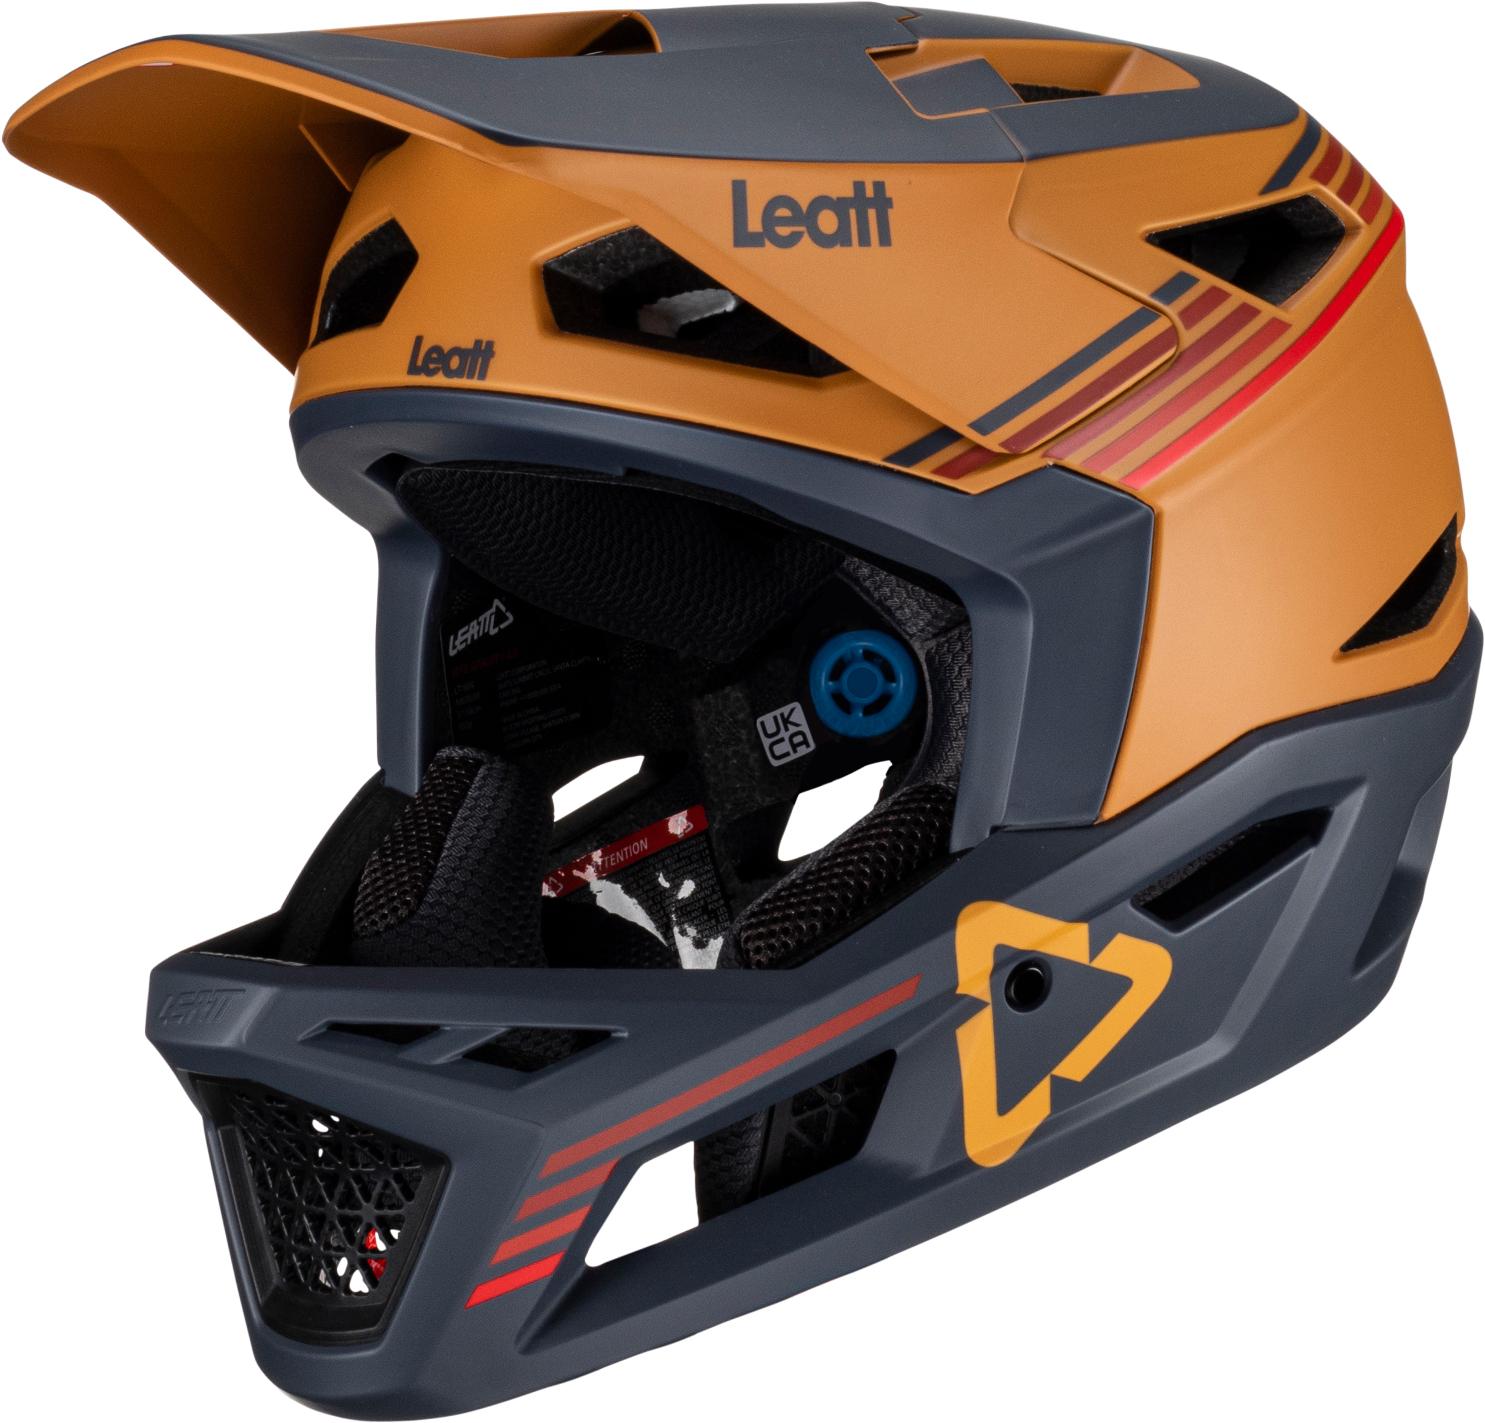 Leatt Mtb Gravity 4.0 Helmet - Suede